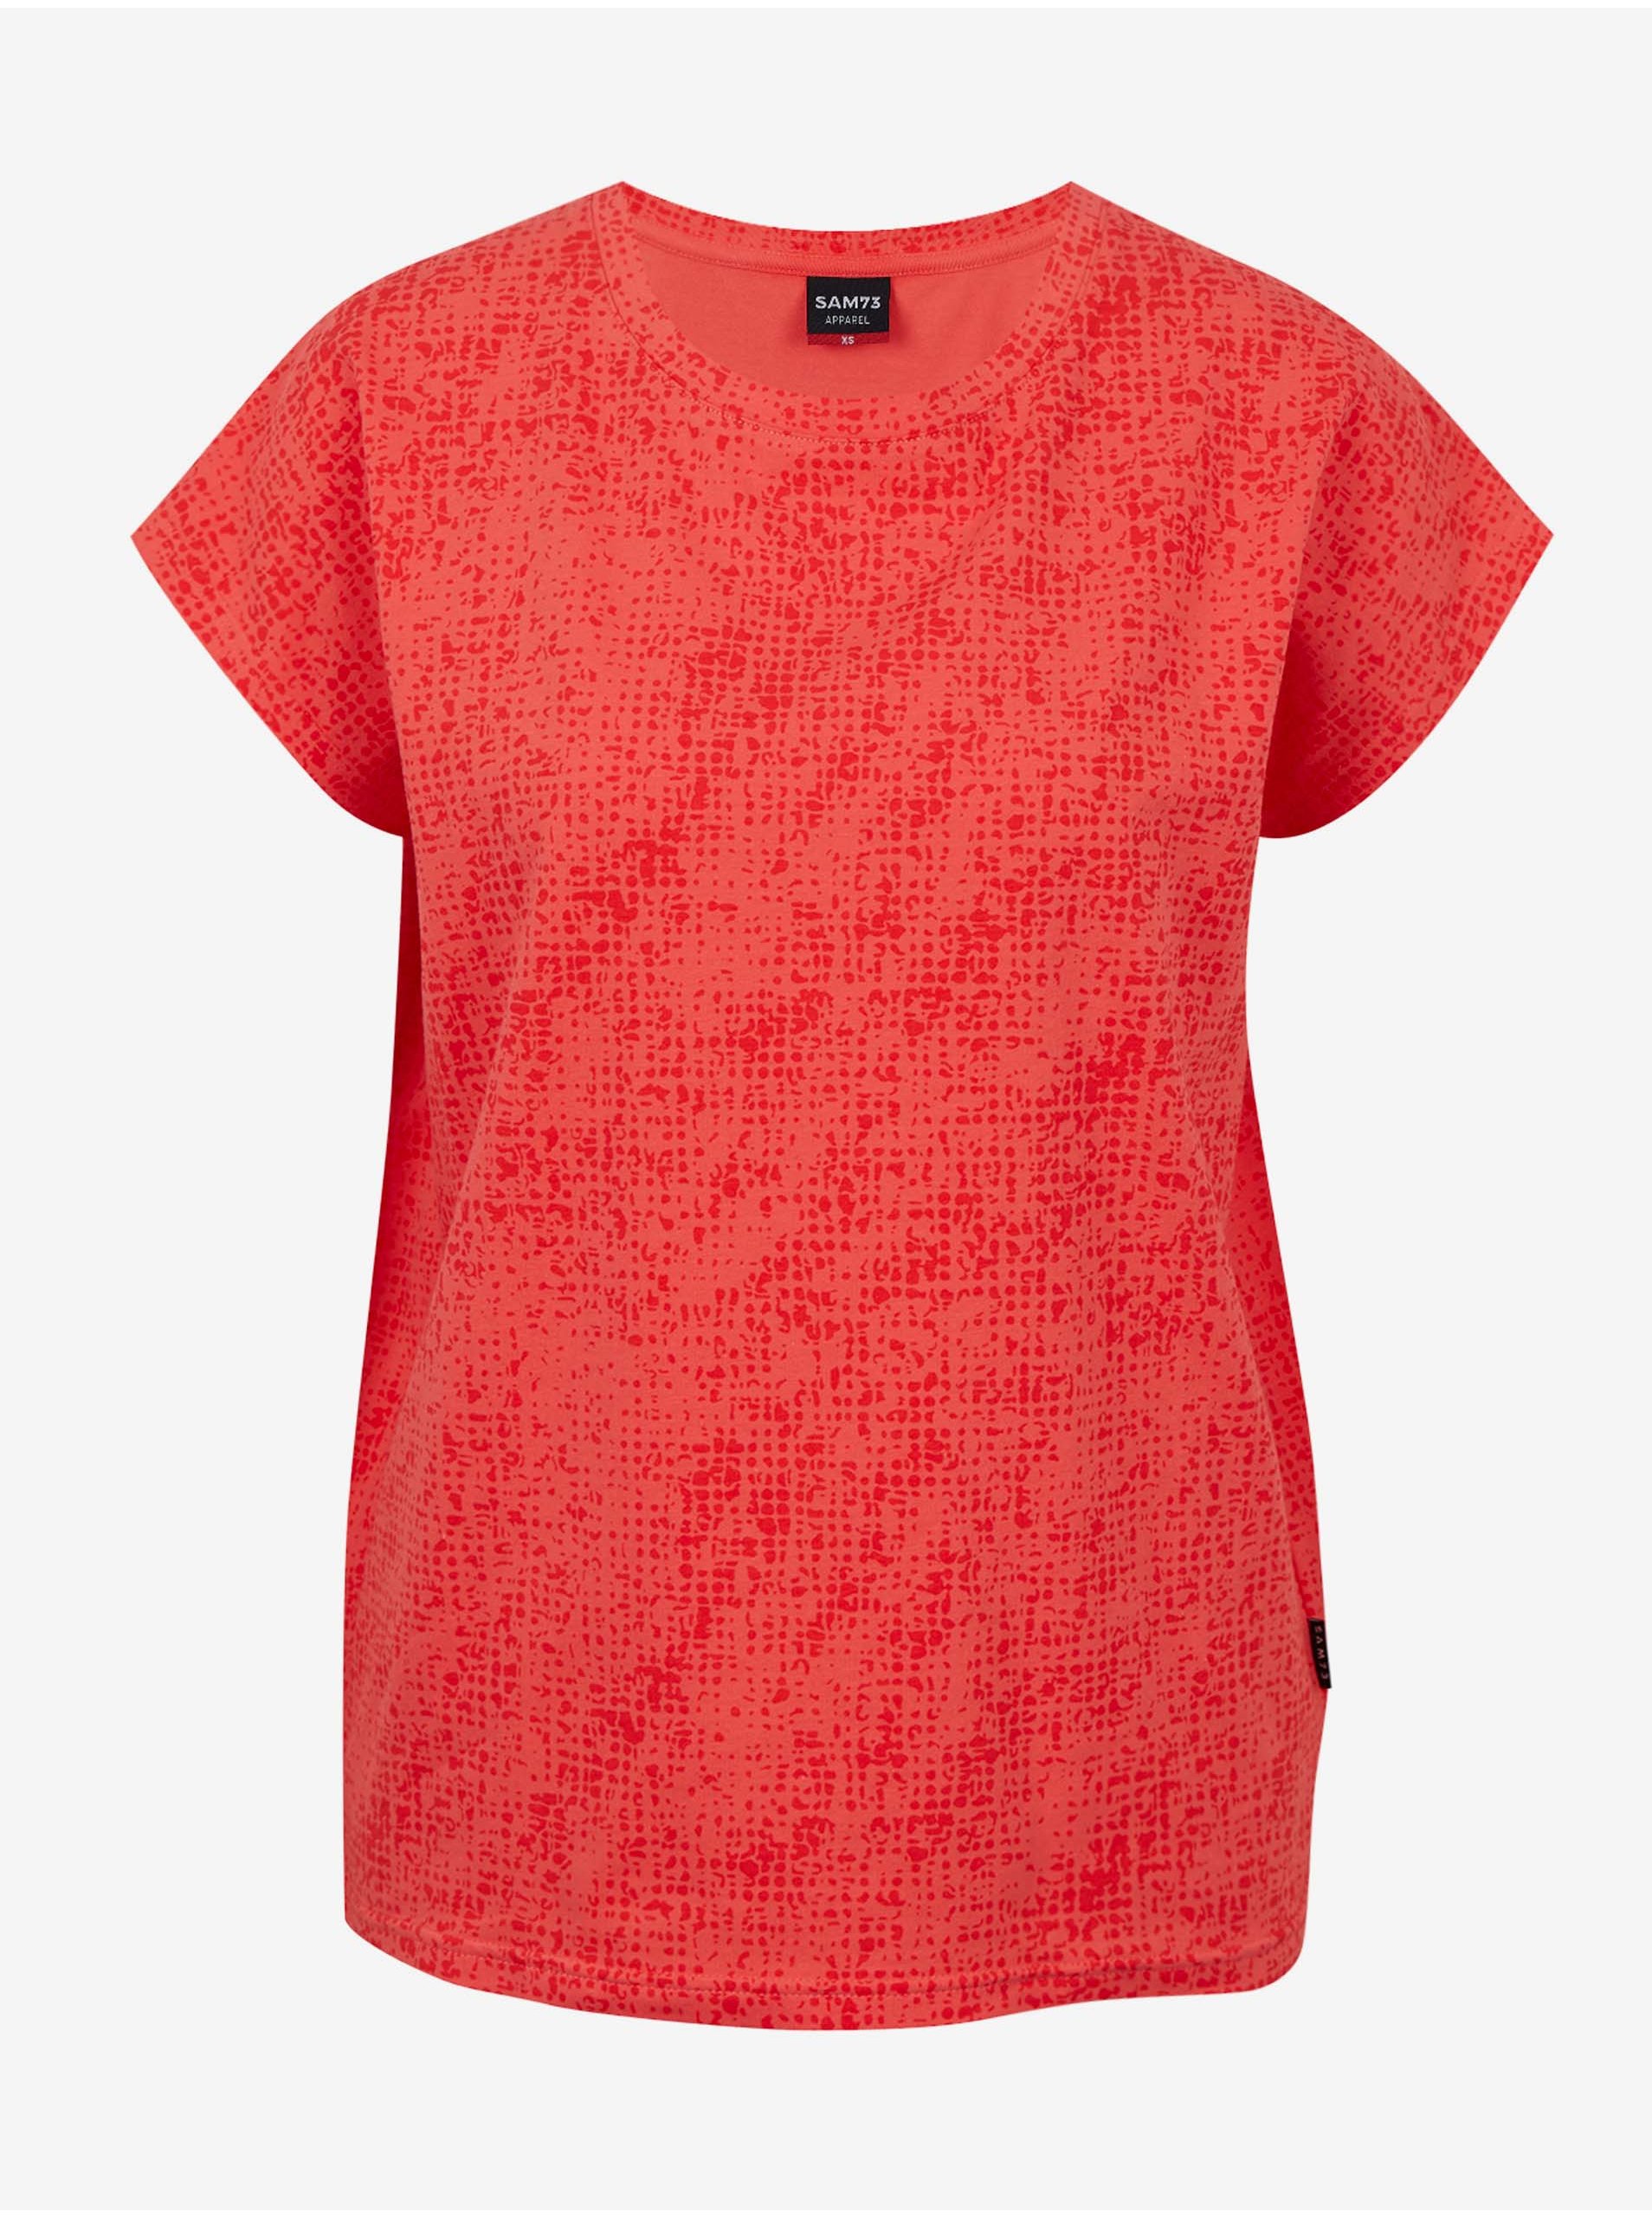 Lacno Koralové dámske vzorované tričko SAM 73 Veronica